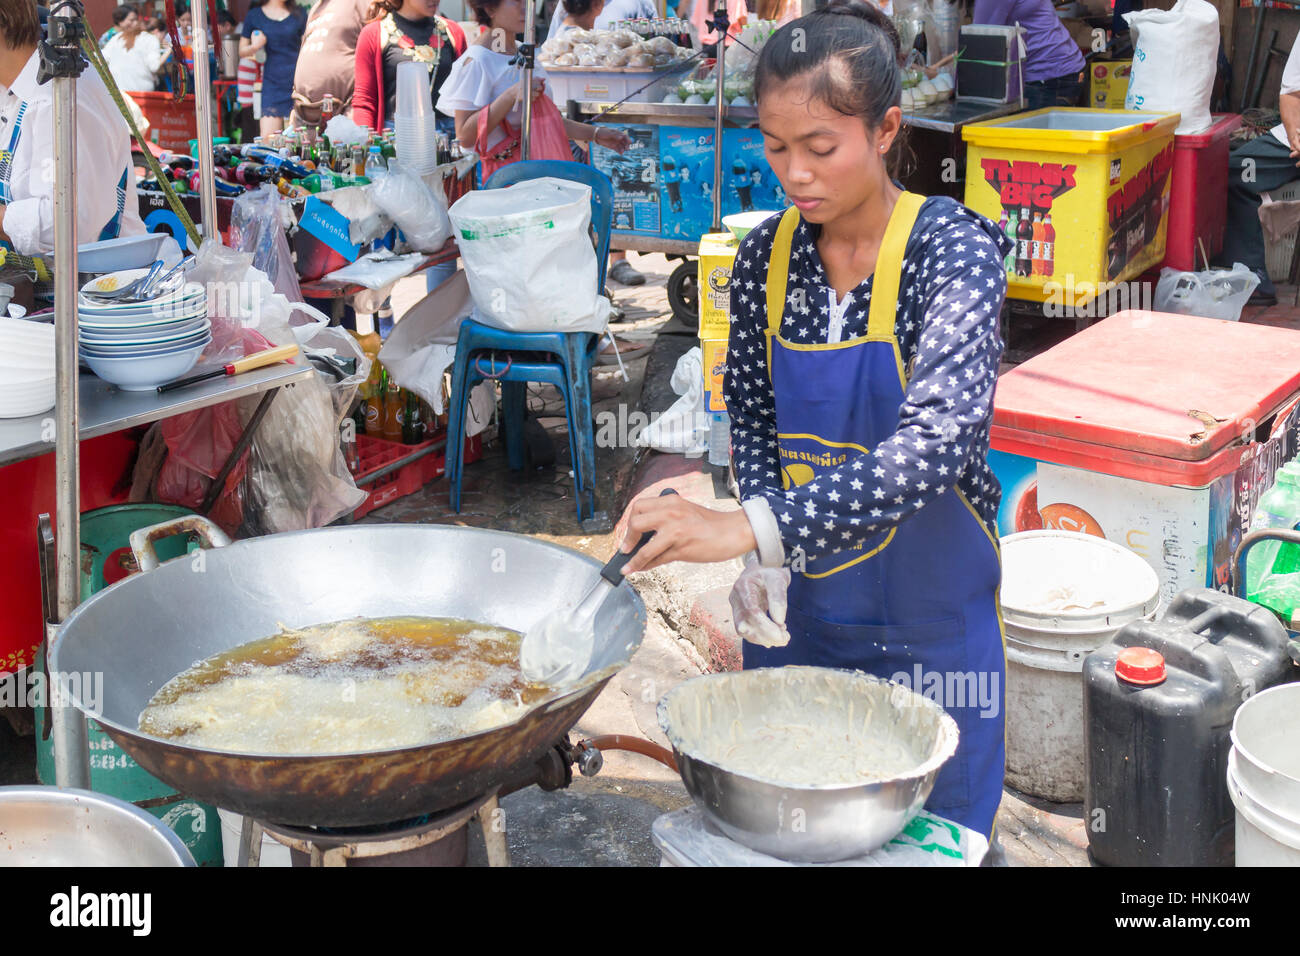 De vendeurs d'aliments de rue dans le quartier chinois, Bangkok, Thaïlande Banque D'Images